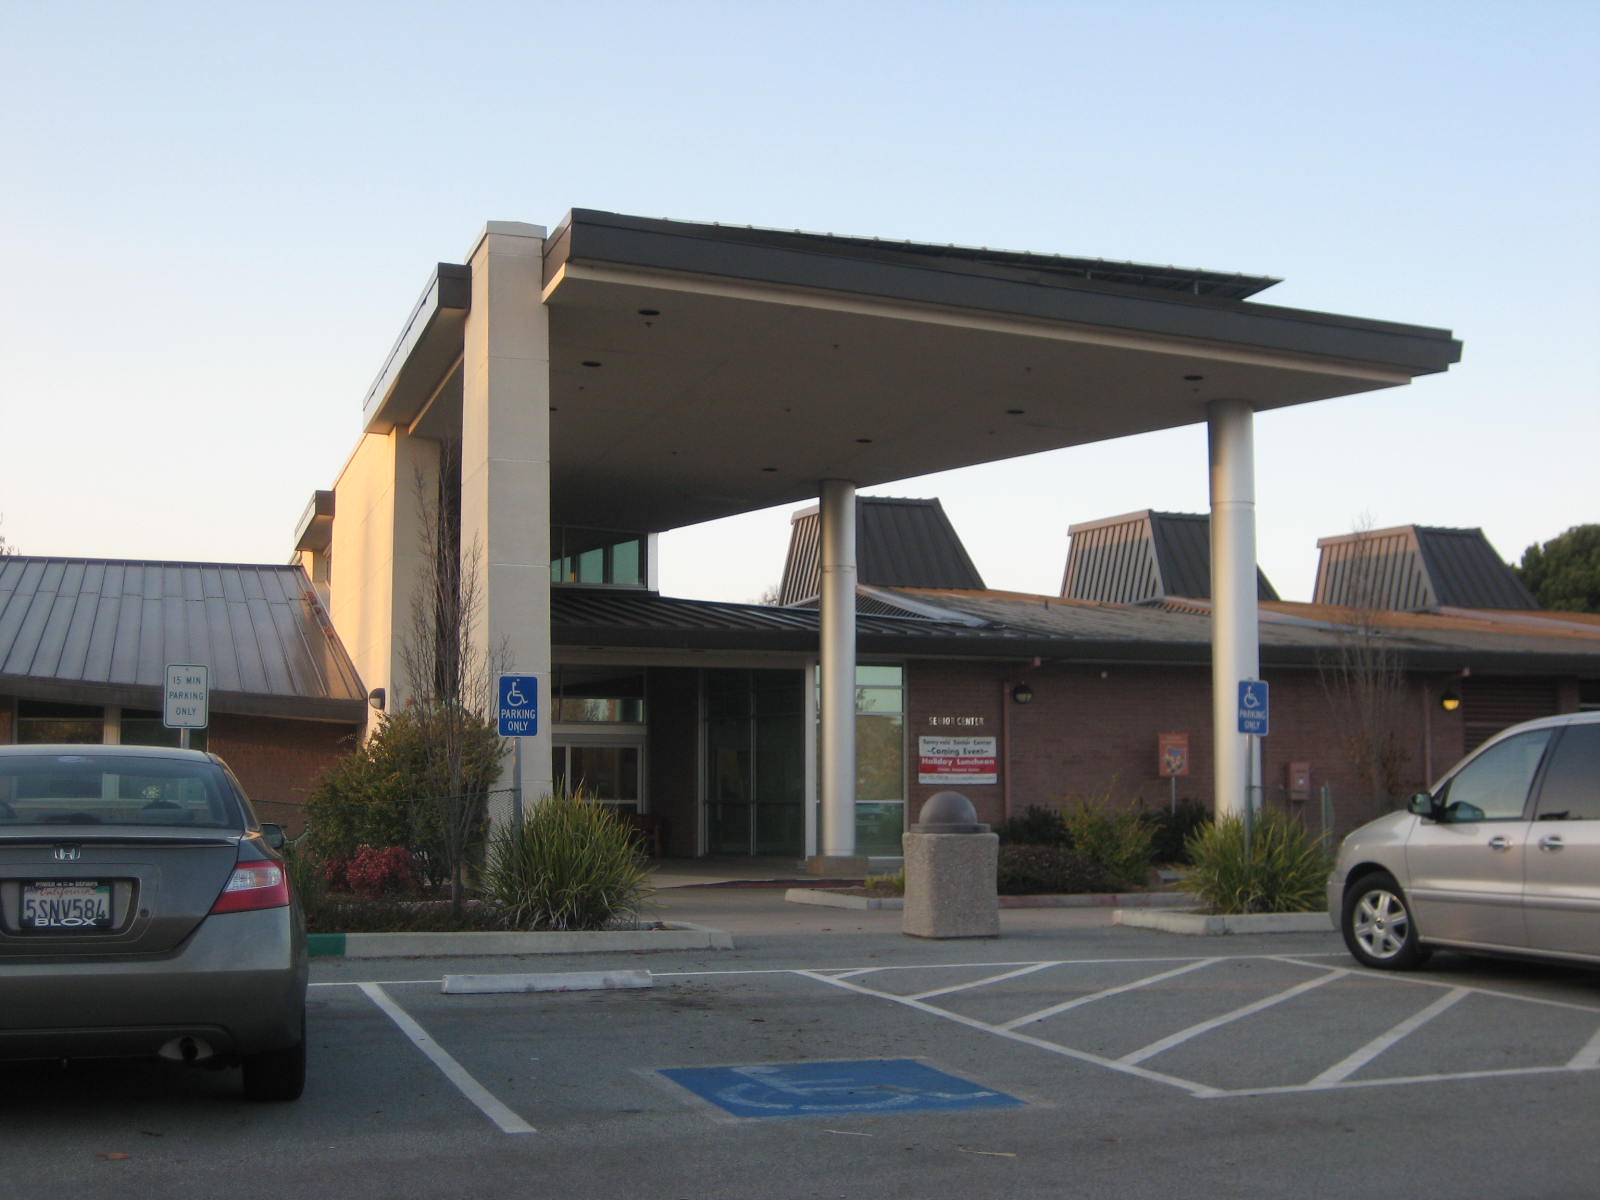 Senior Center - Sunnyvale, California